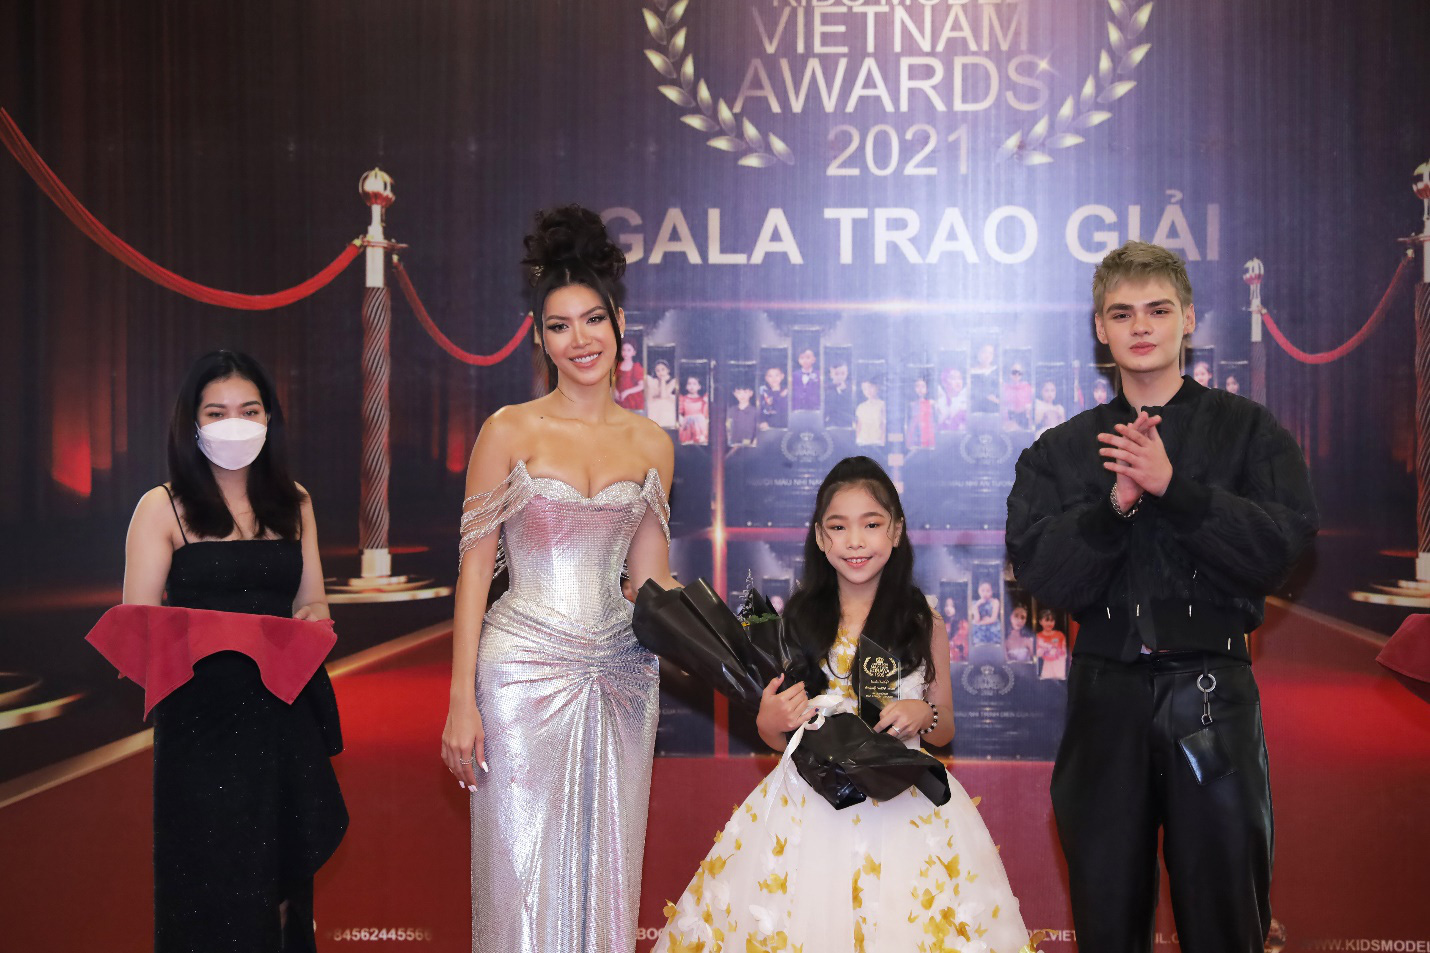 Dàn mẫu nhí chiến thắng tại Gala trao giải KIDS MODEL VIETNAM AWARDS 2021 - Ảnh 5.